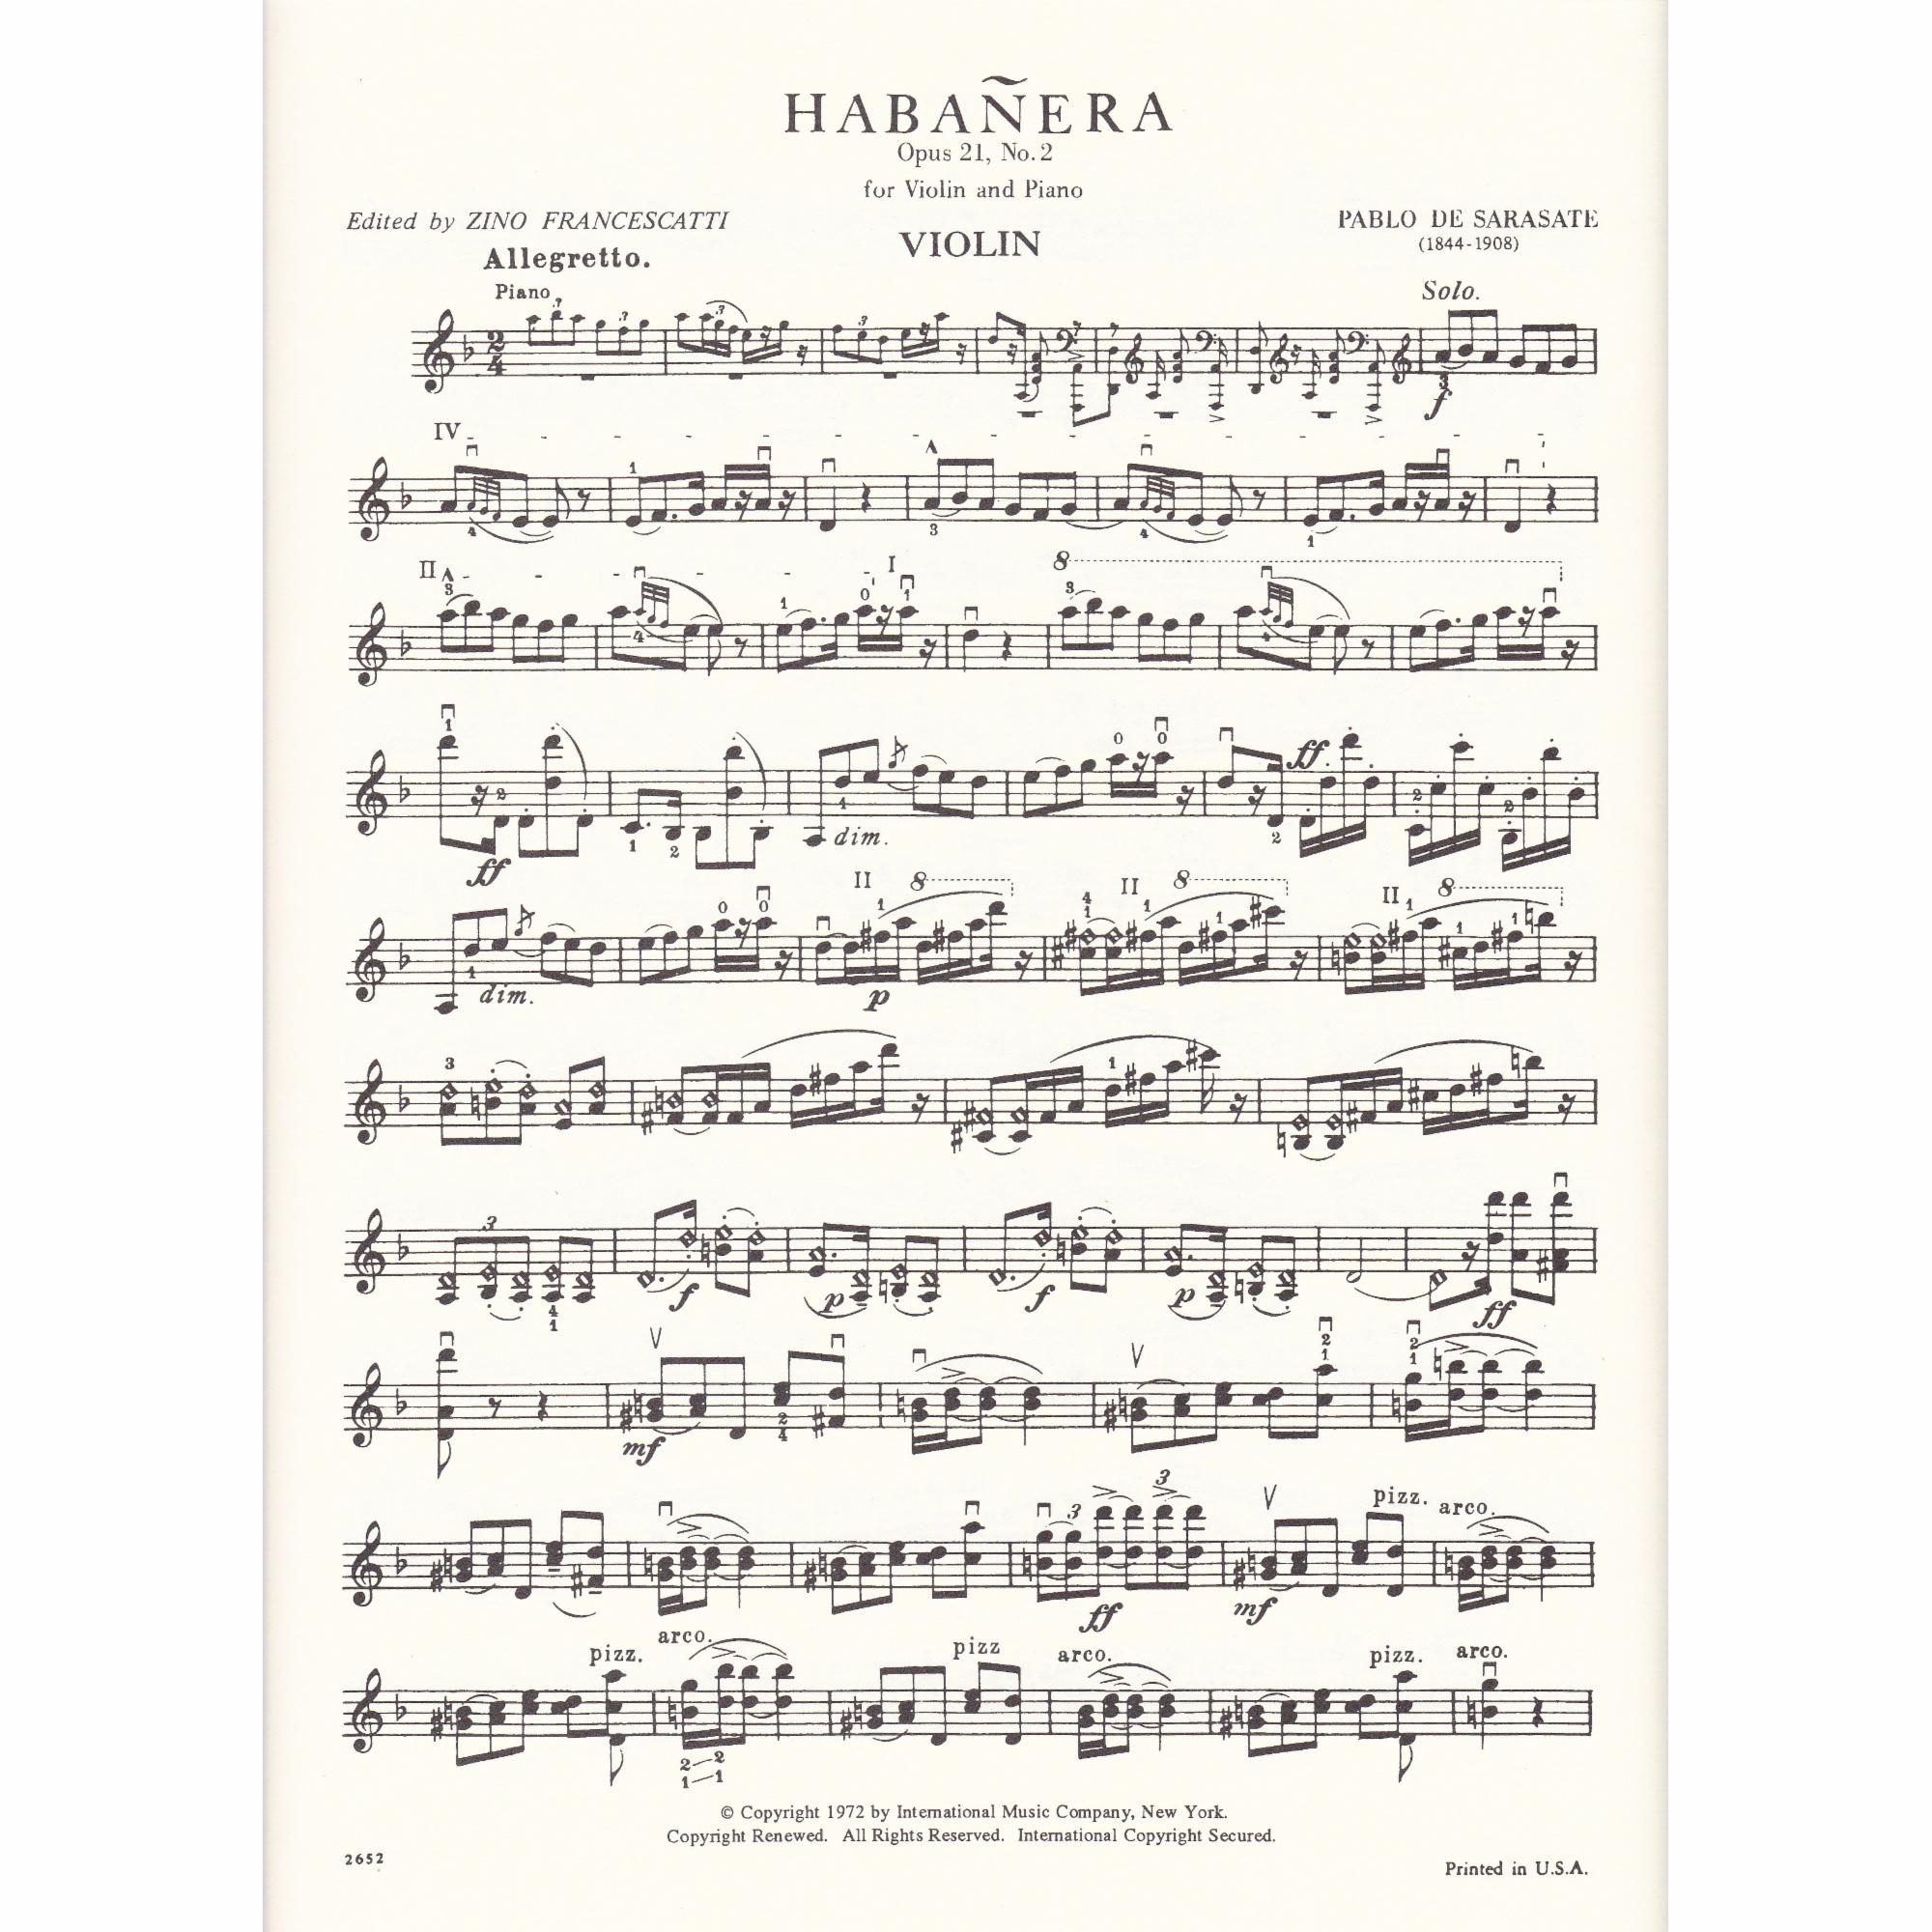 Habanera for Violin and Piano, Op. 21, No. 2